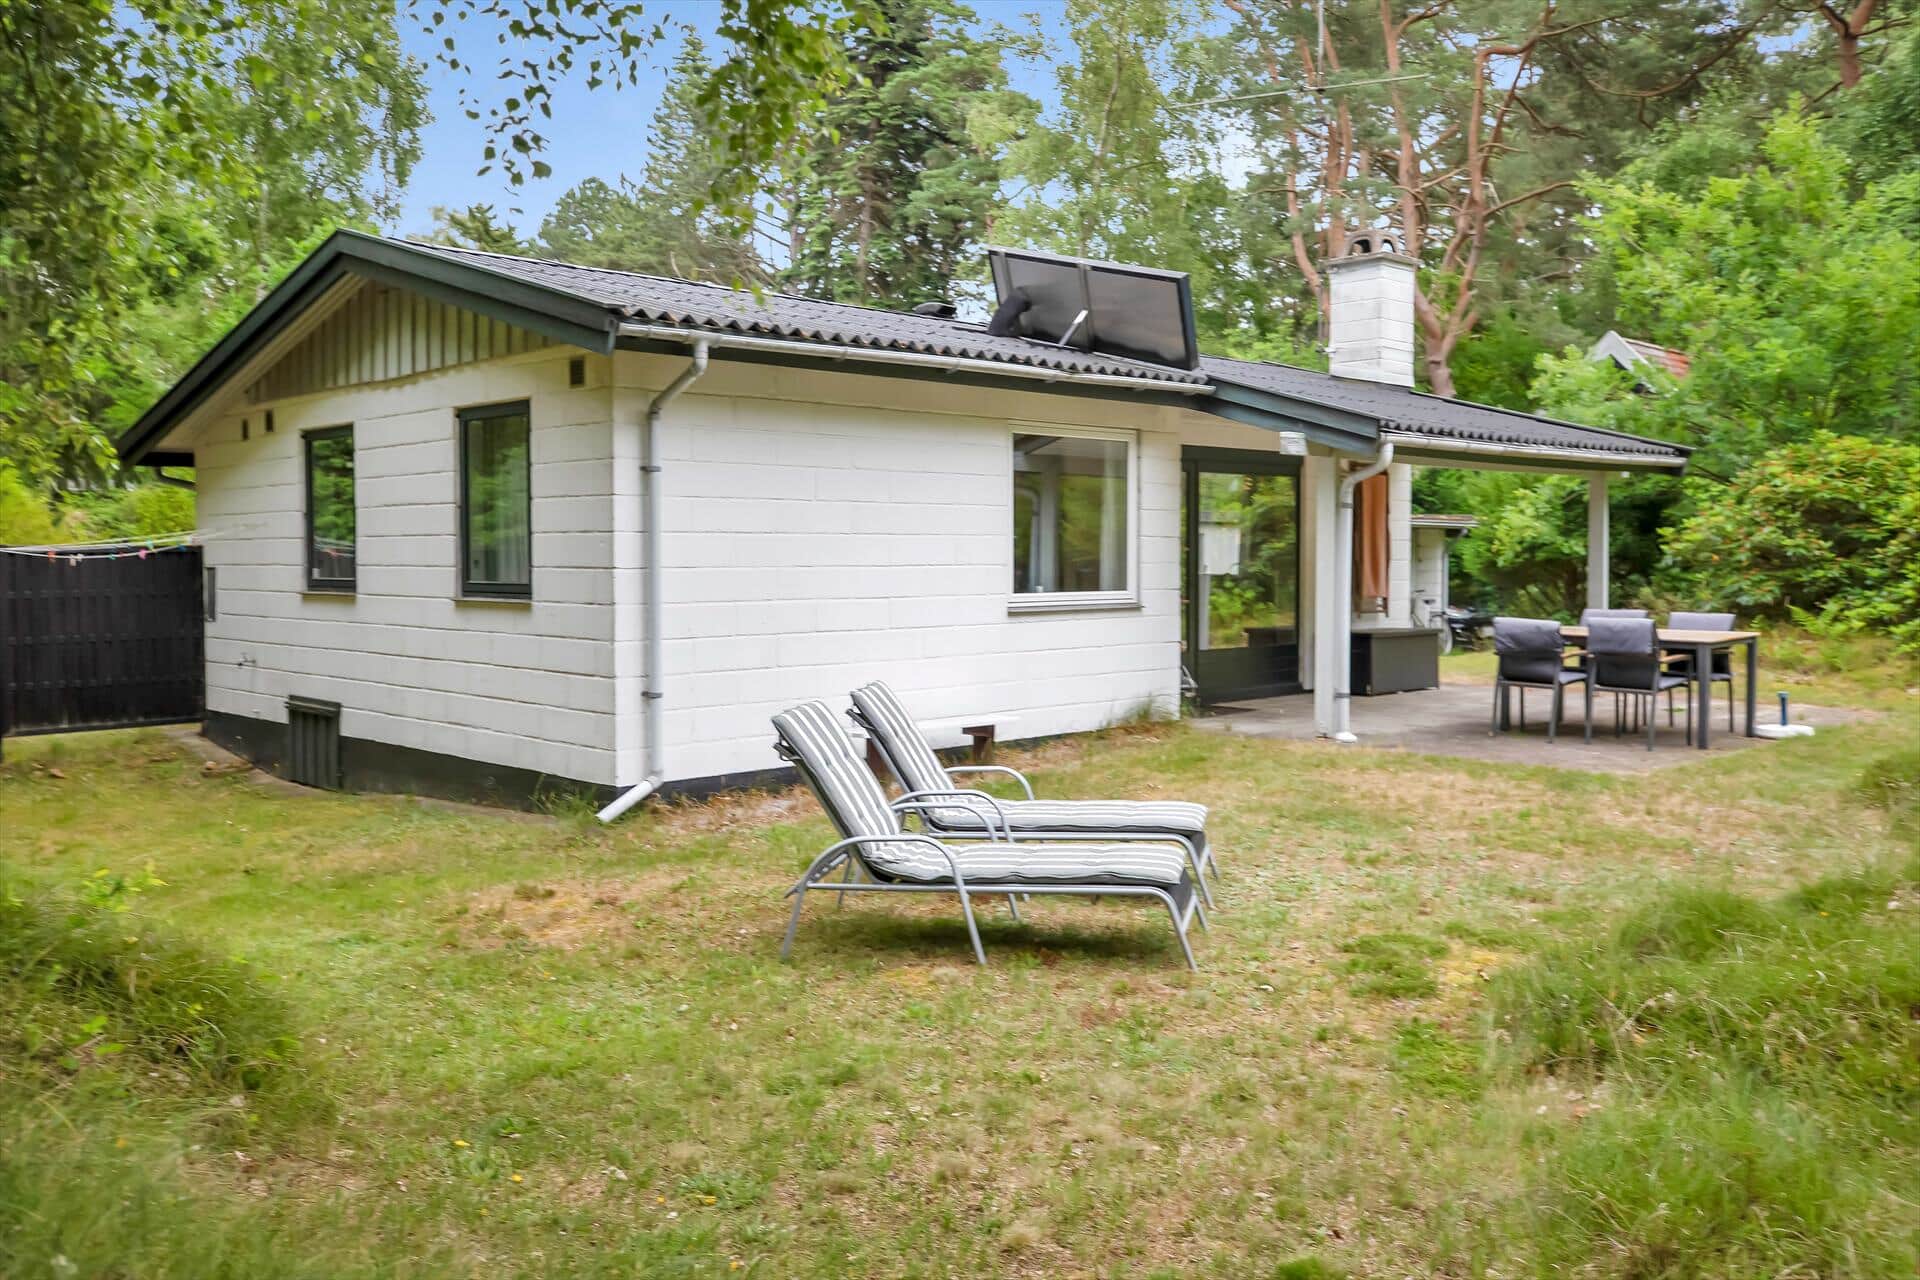 Image 0-17 Holiday-home 11101, Vestvej 19, DK - 4500 Nykøbing Sj